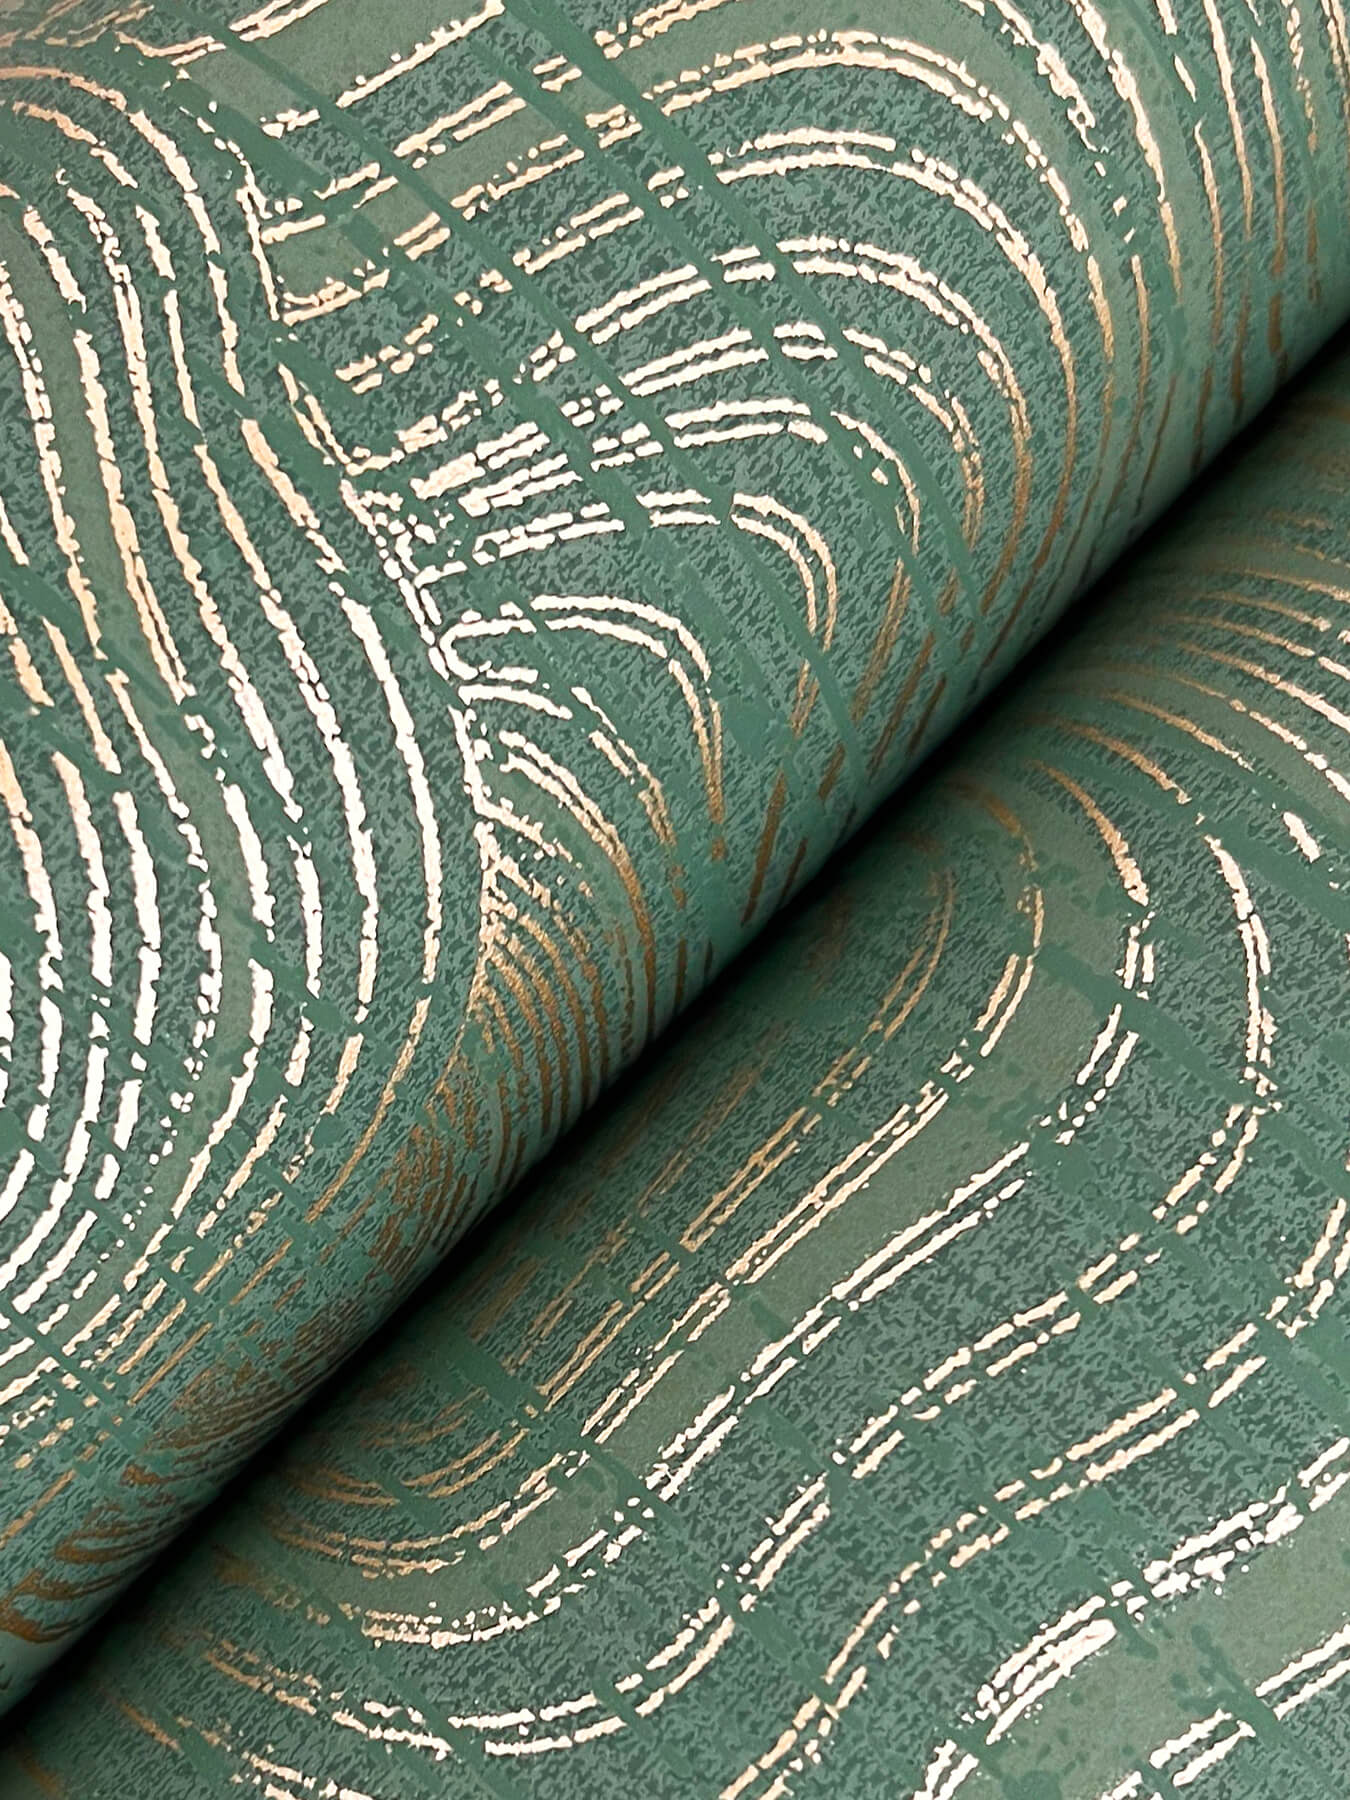 Ronald Redding Classics Geodes Wallpaper - Green